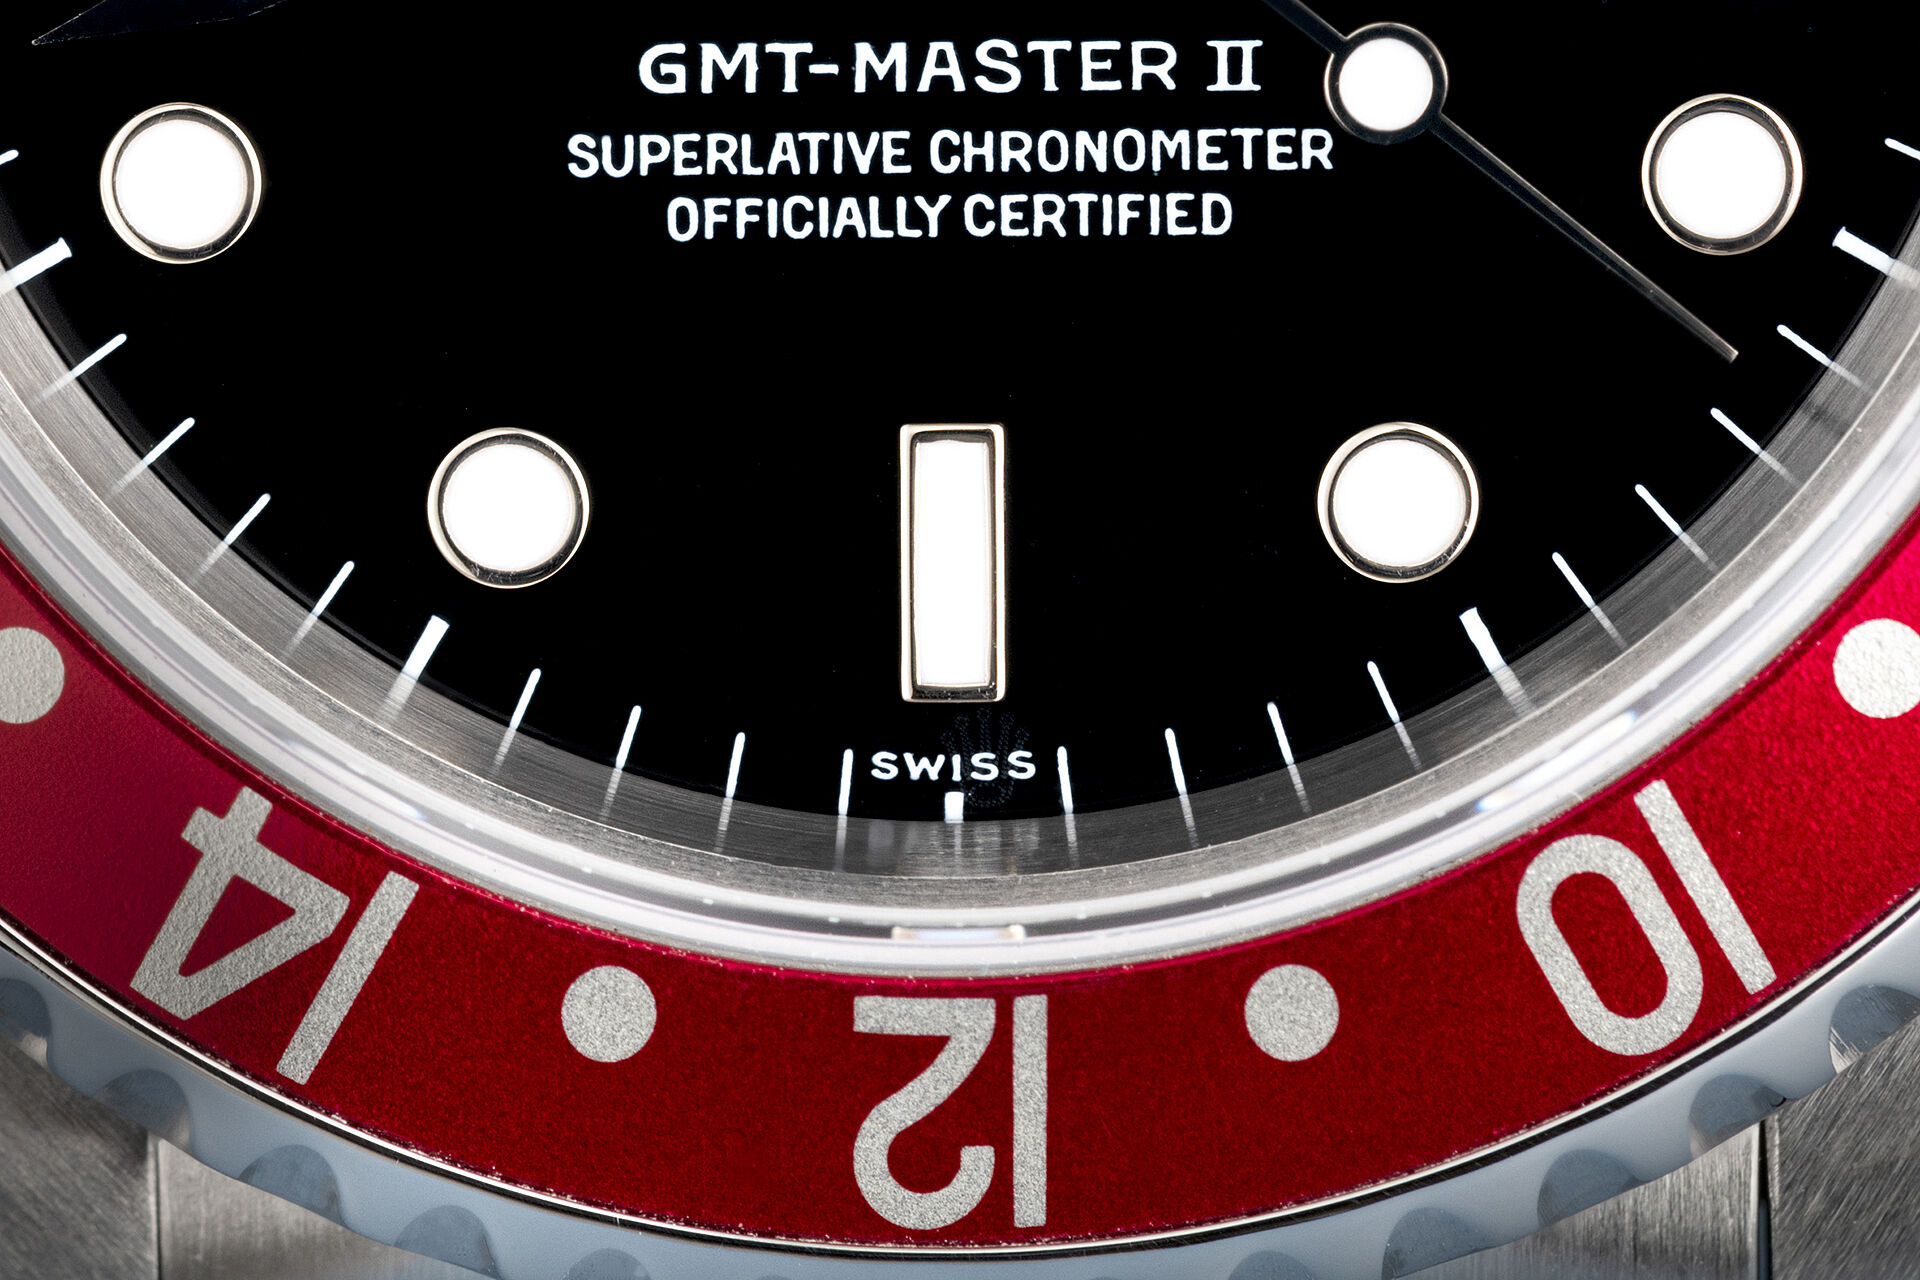 ref 16710 | 'Swiss Only' | Rolex GMT-Master II